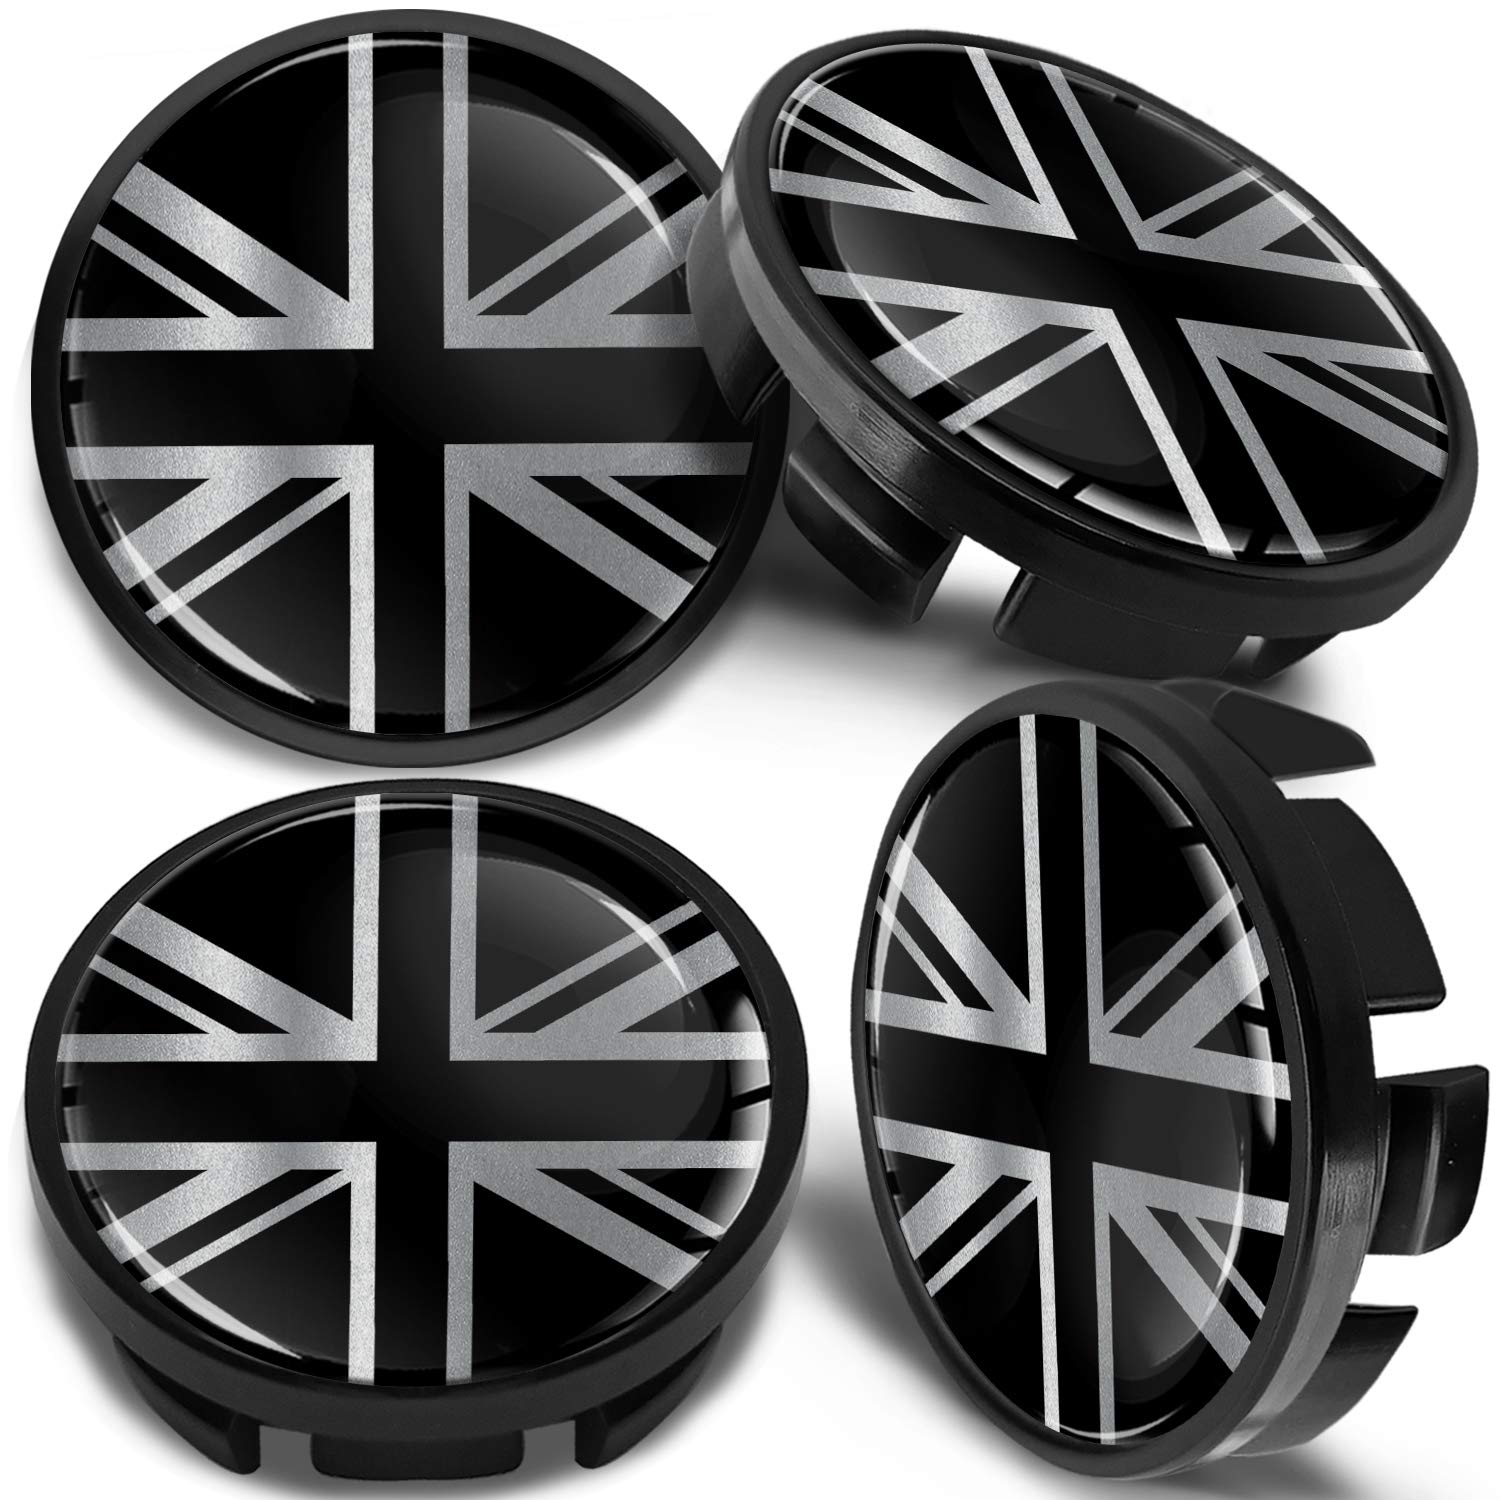 SkinoEu Kompatibel für Nabendeckel VW 65mm Radnabenabdeckung für Alufelgen Felgendeckel Nabenkappe Radkappen UK Großbritannien Flagge Schwarz CV 29 von Skino